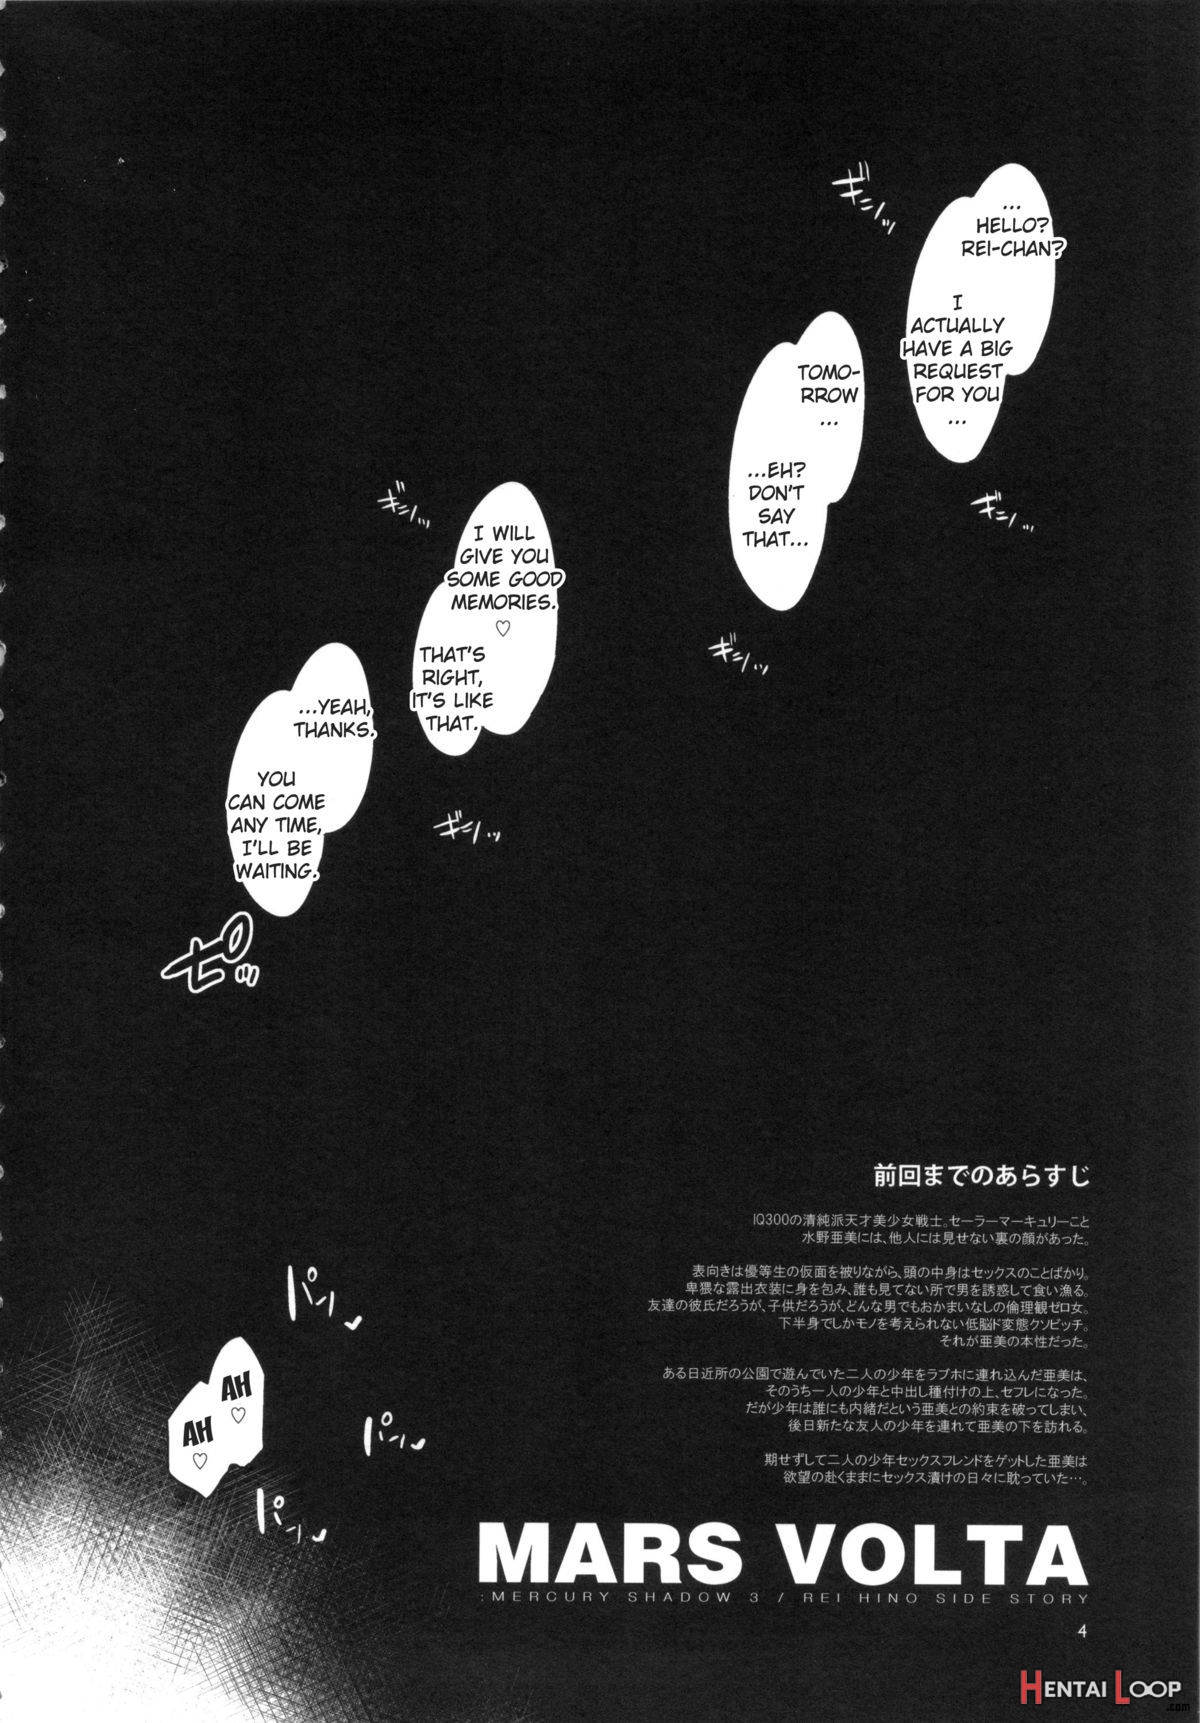 Mars Volta: Mercury Shadow 3 page 3